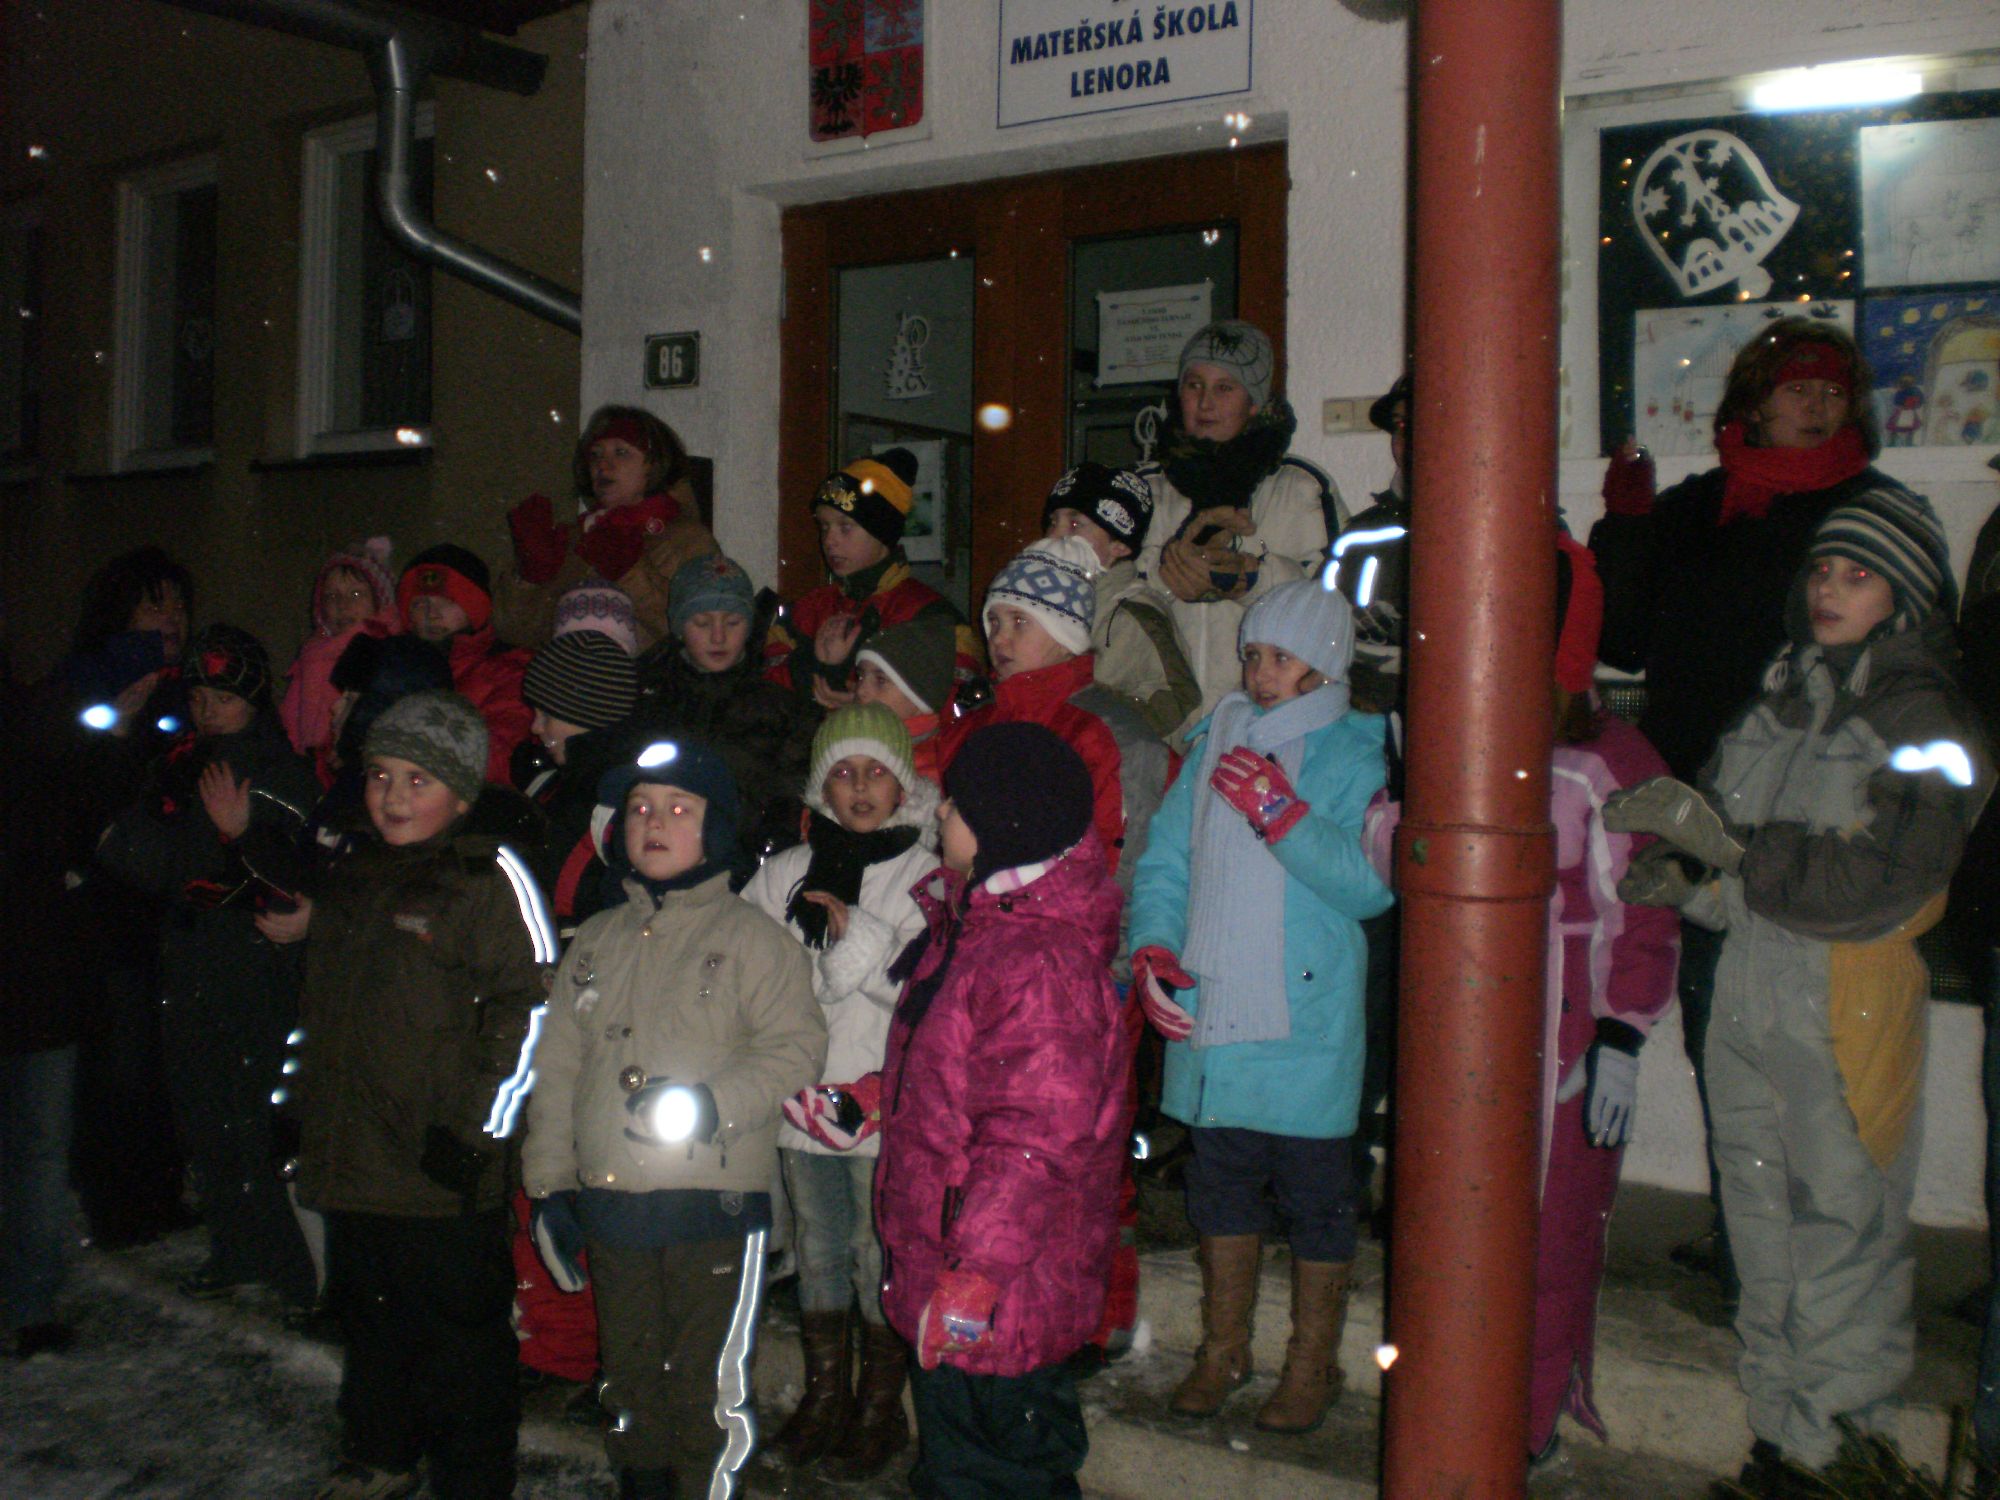 Zpívání před školou 17.12.2009
